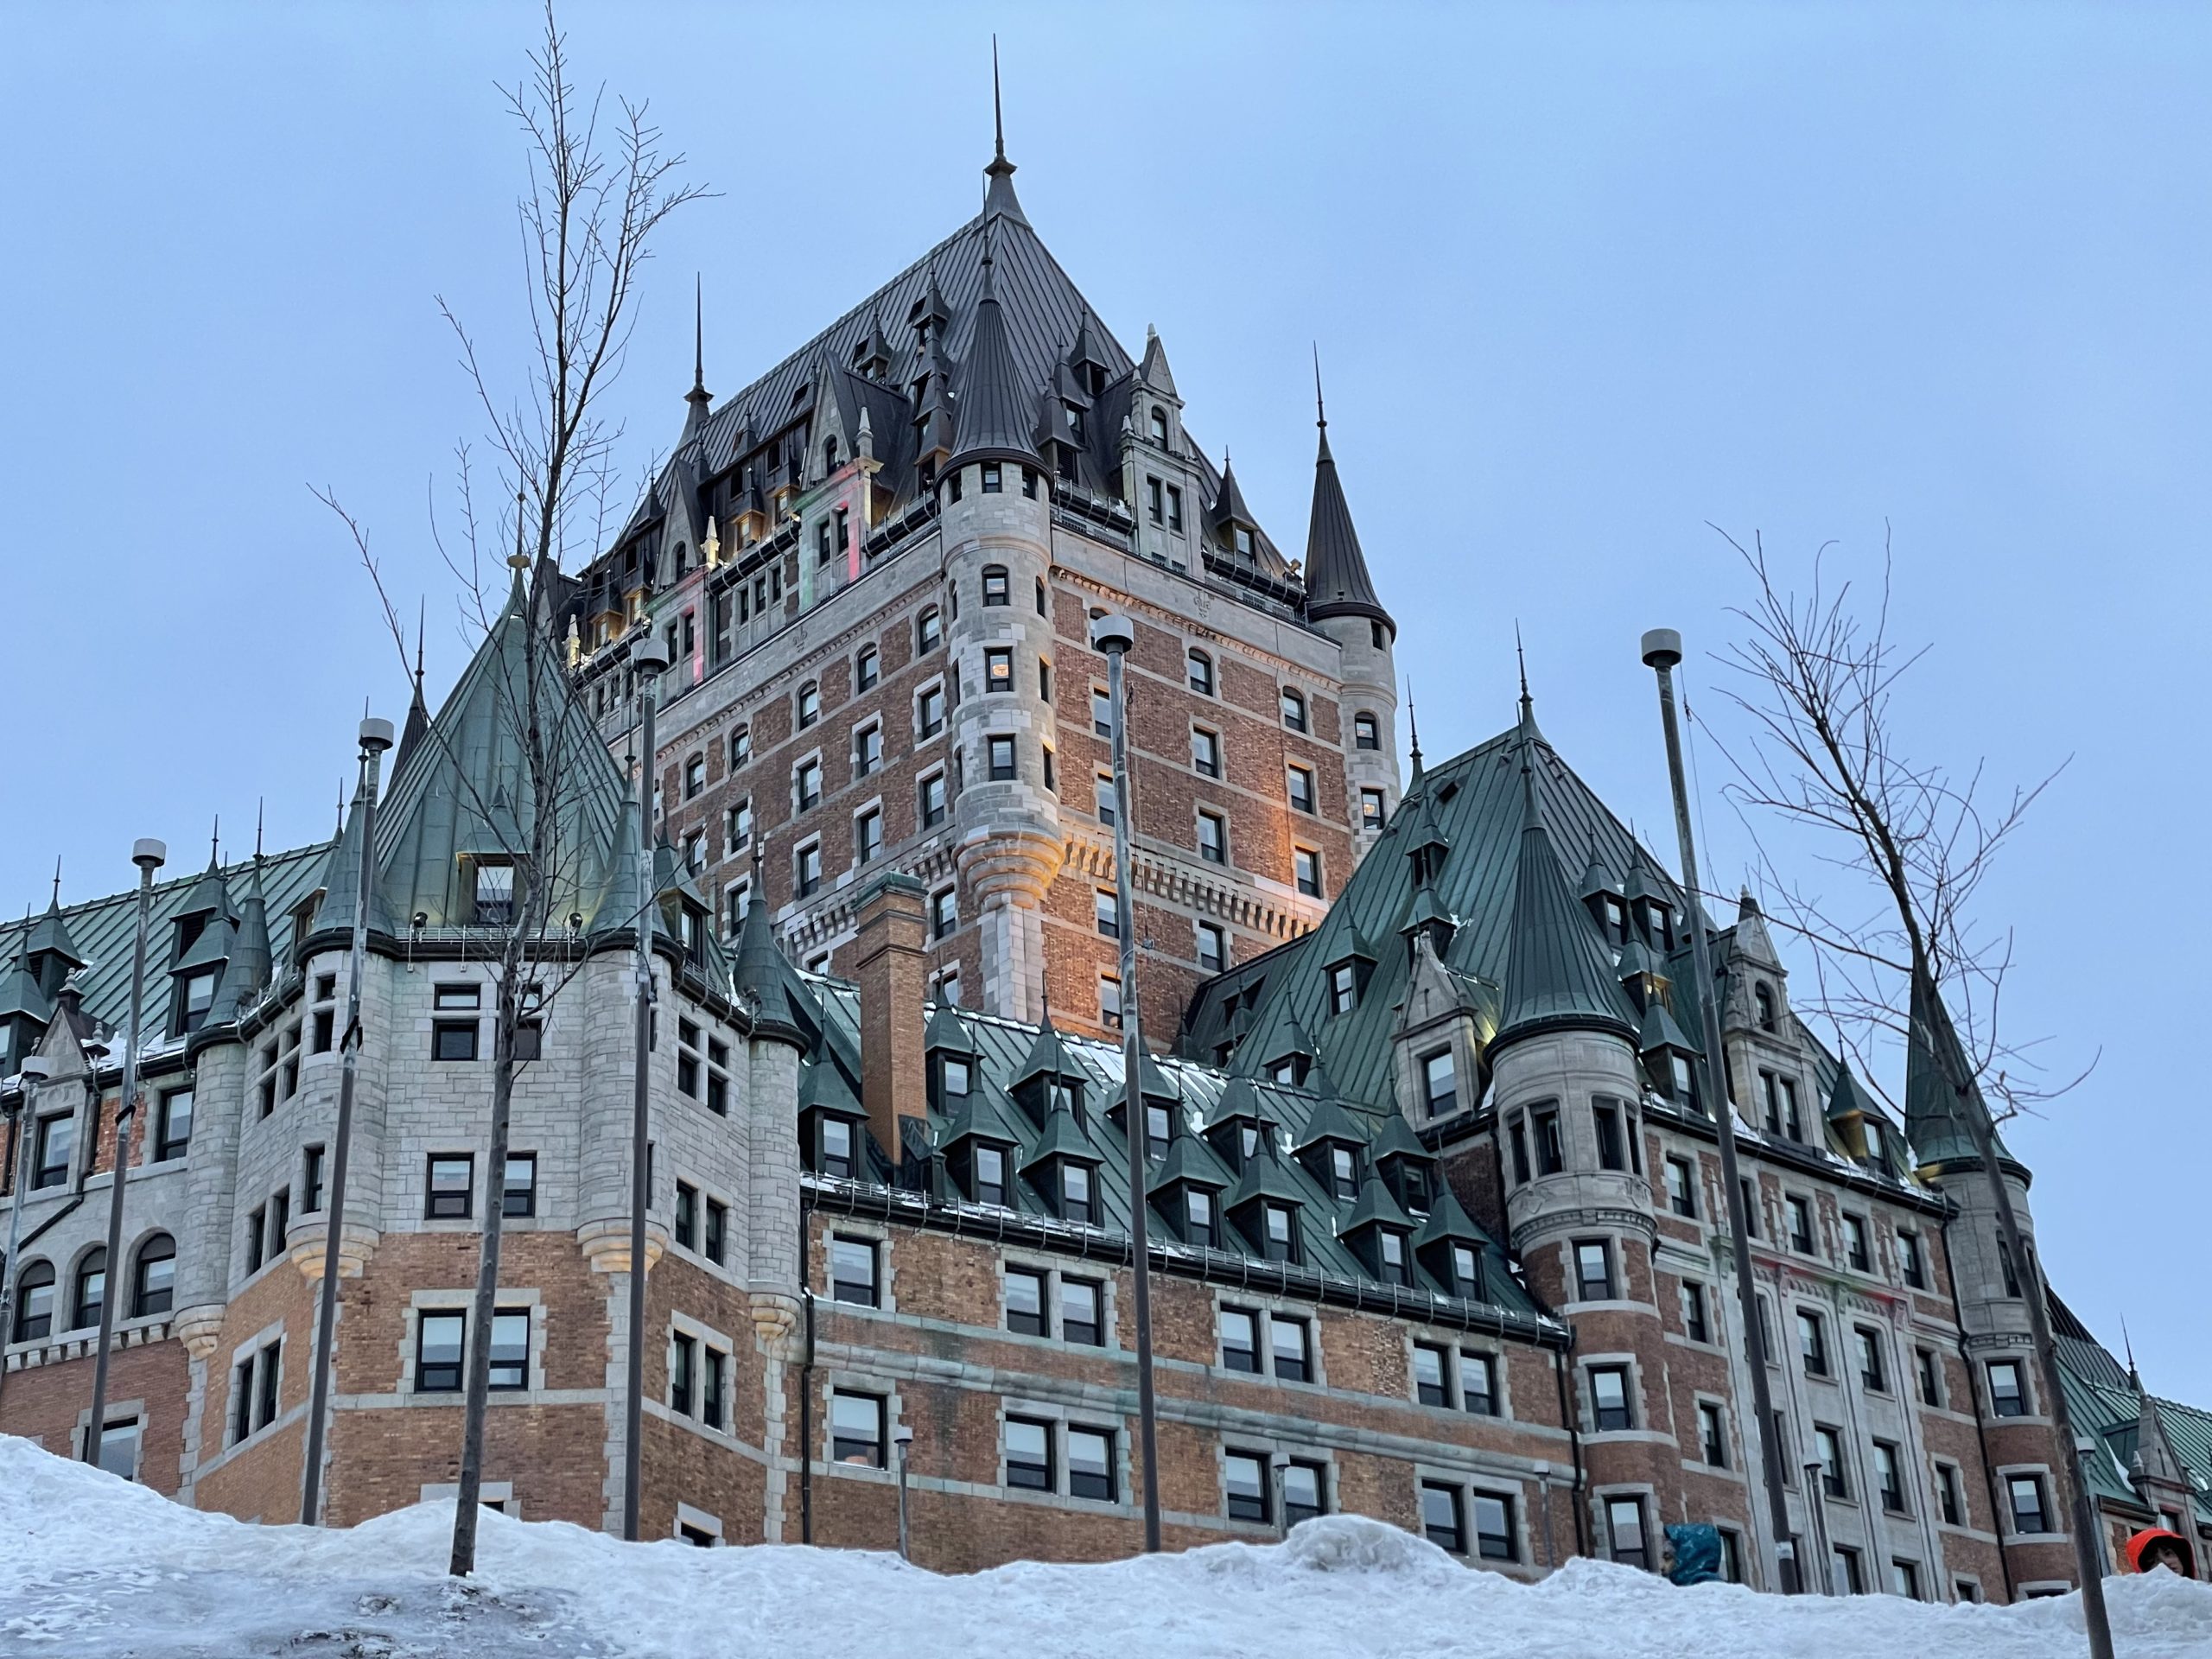 château Frontenac à Quebec